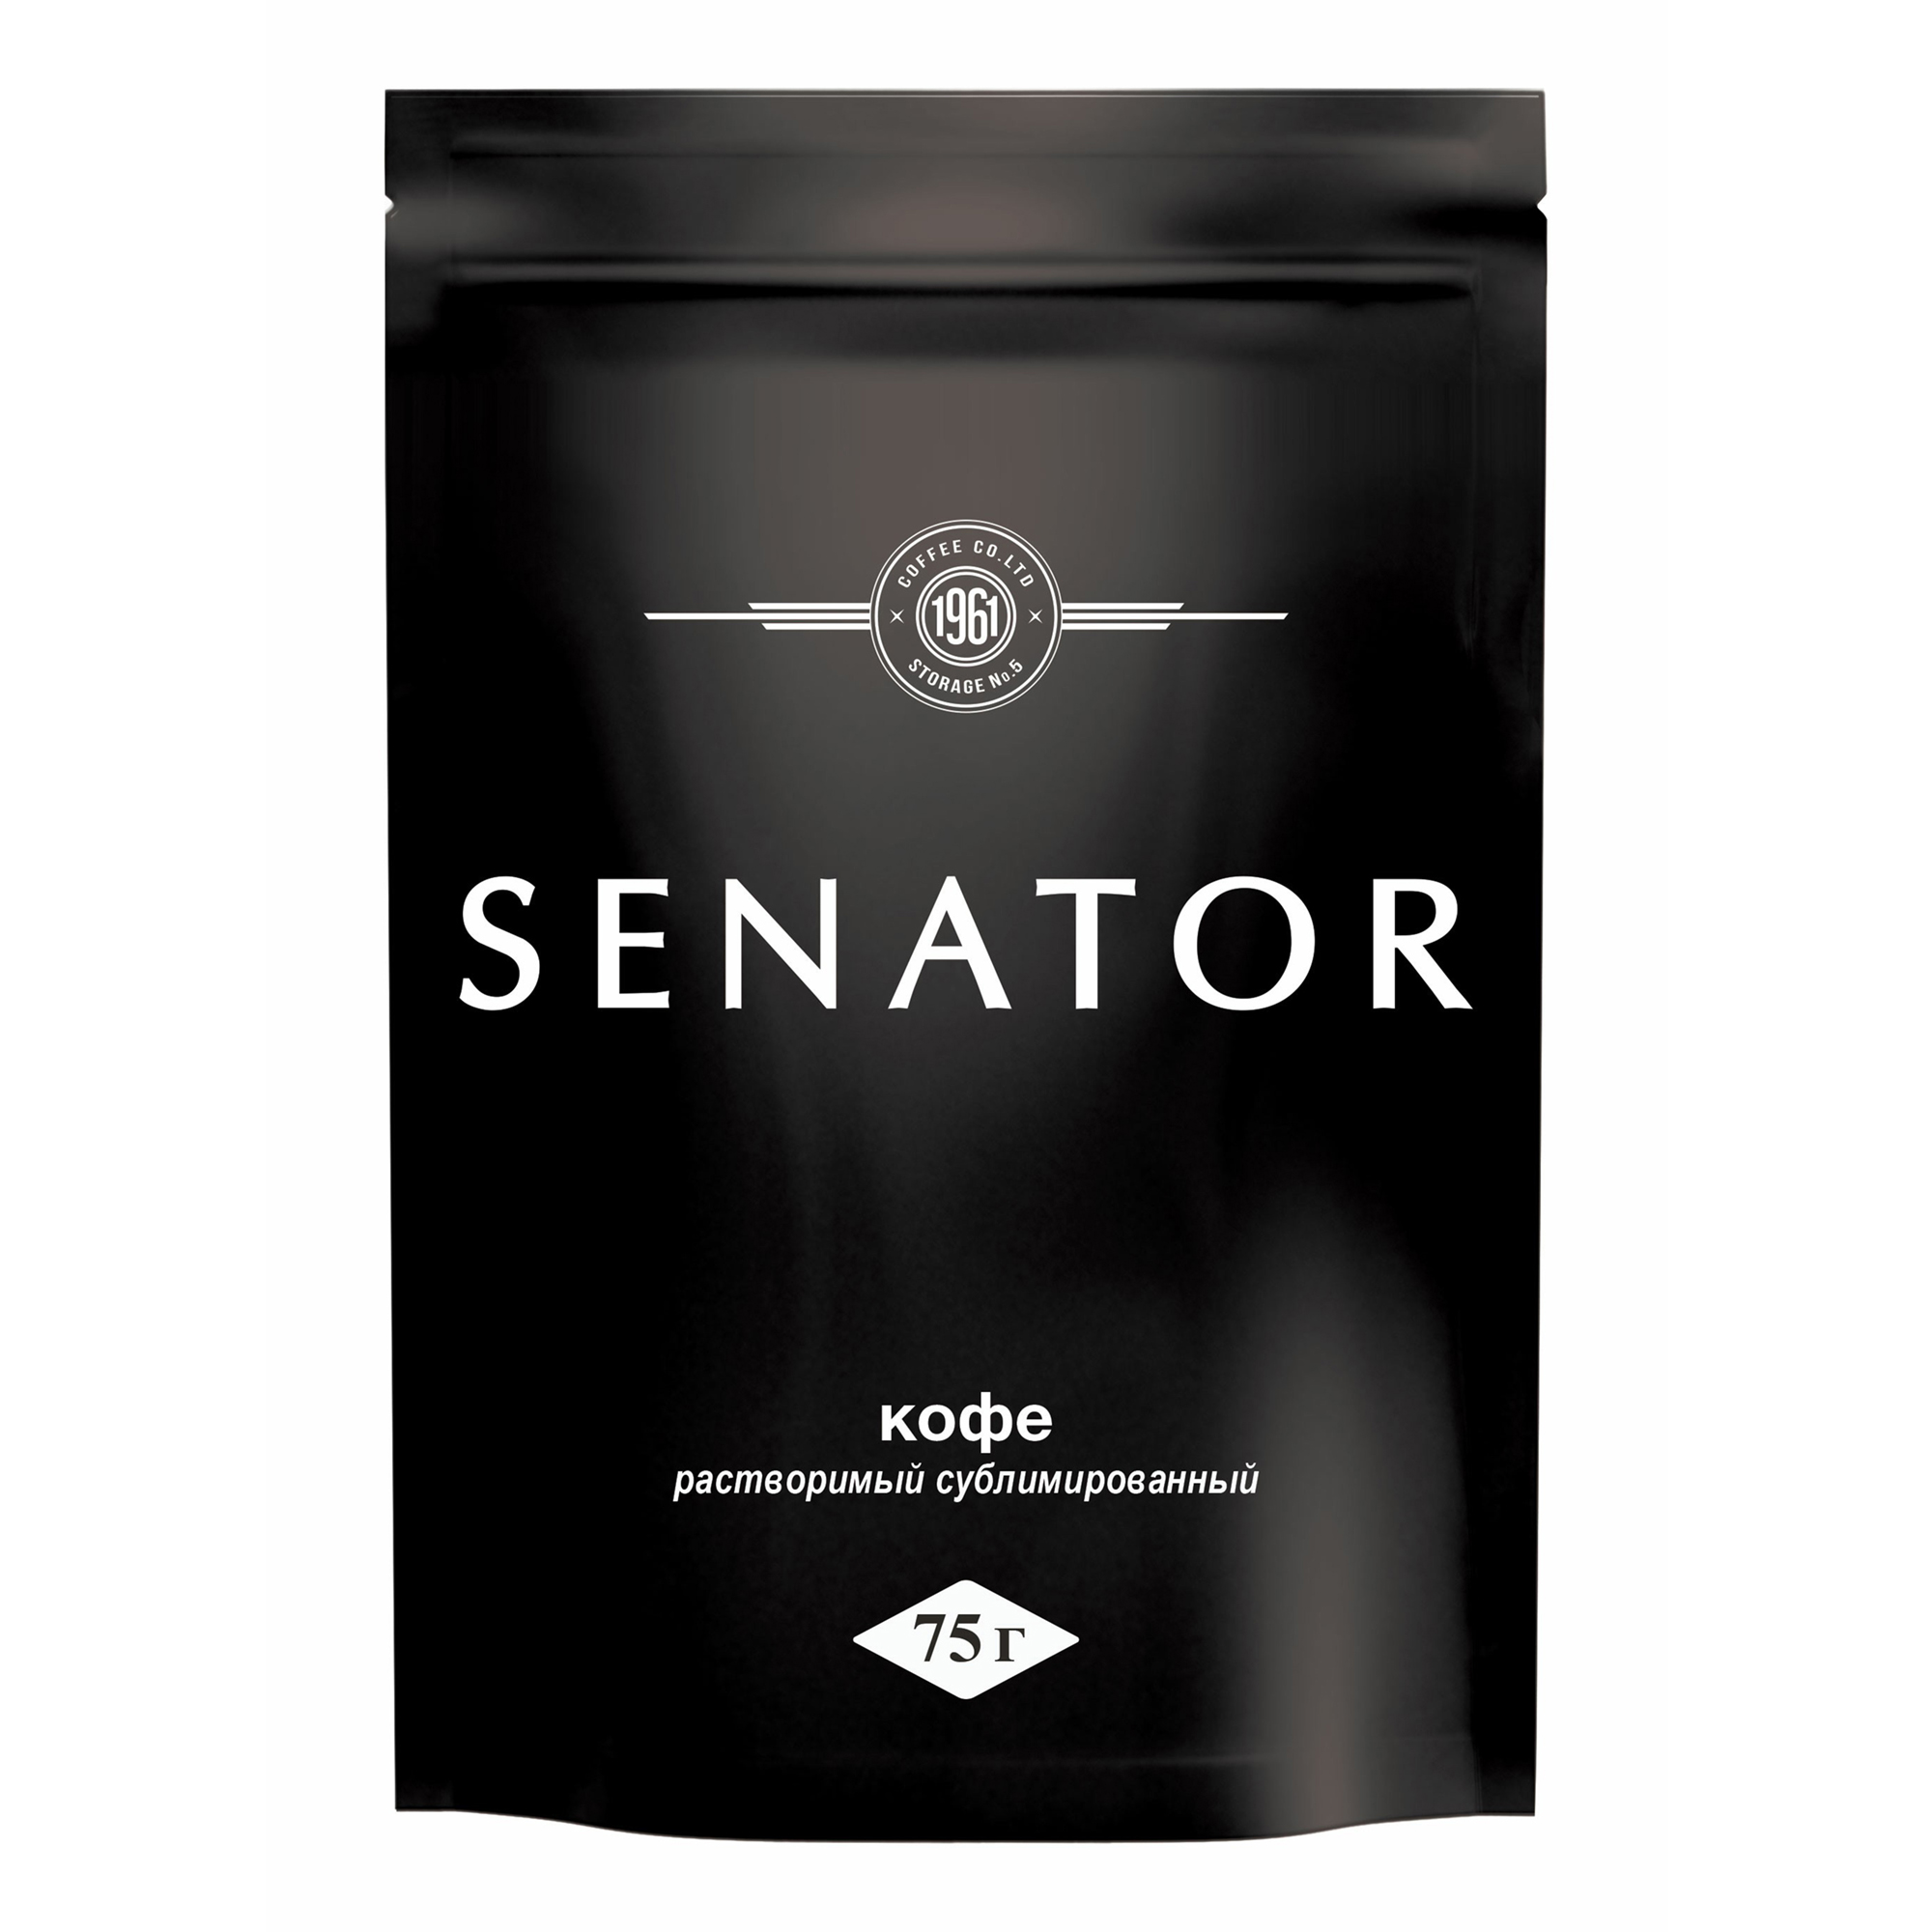 Кофе Senator растворимый сублимированный 75 г